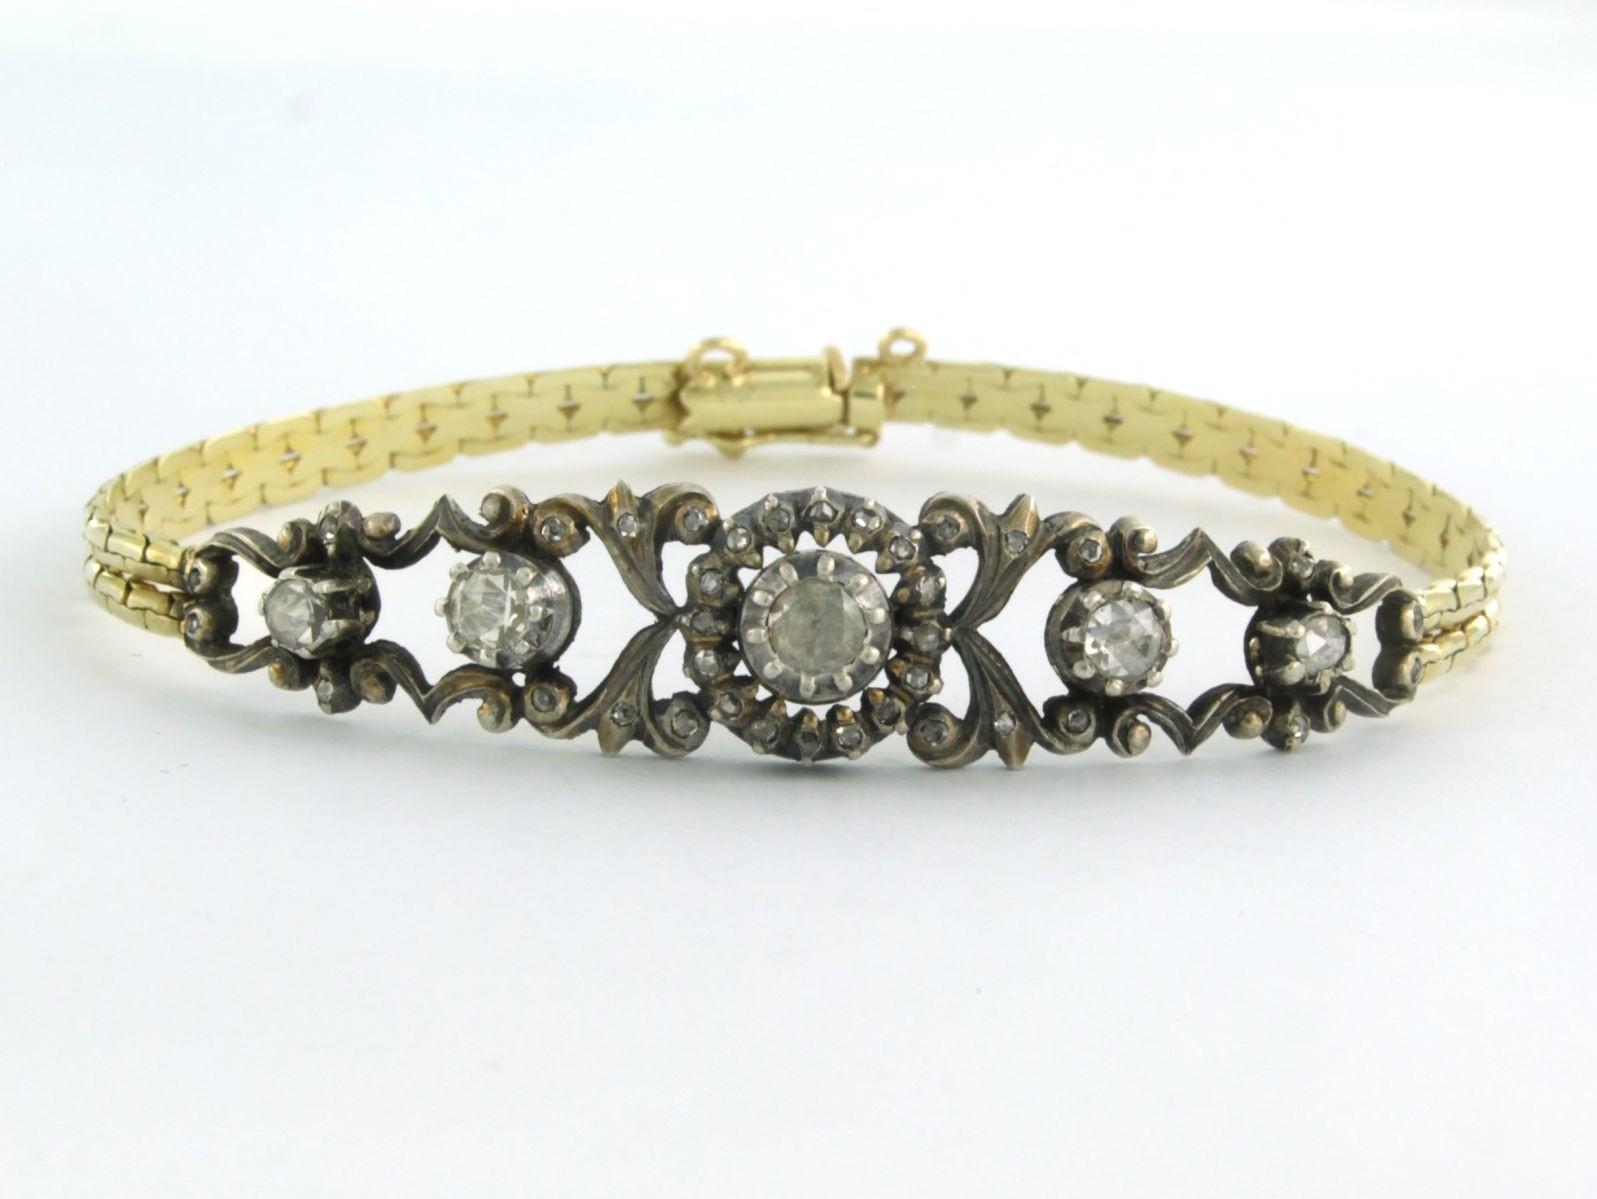 Bracelet en or jaune 14k et argent serti d'un diamant taille rose 0,40 ct G/H SI - 18,5 cm

description détaillée :

la longueur du bracelet est de 18,5 cm et la largeur du bracelet est de 4,4 mm

la pièce centrale mesure environ 5,5 cm de long et